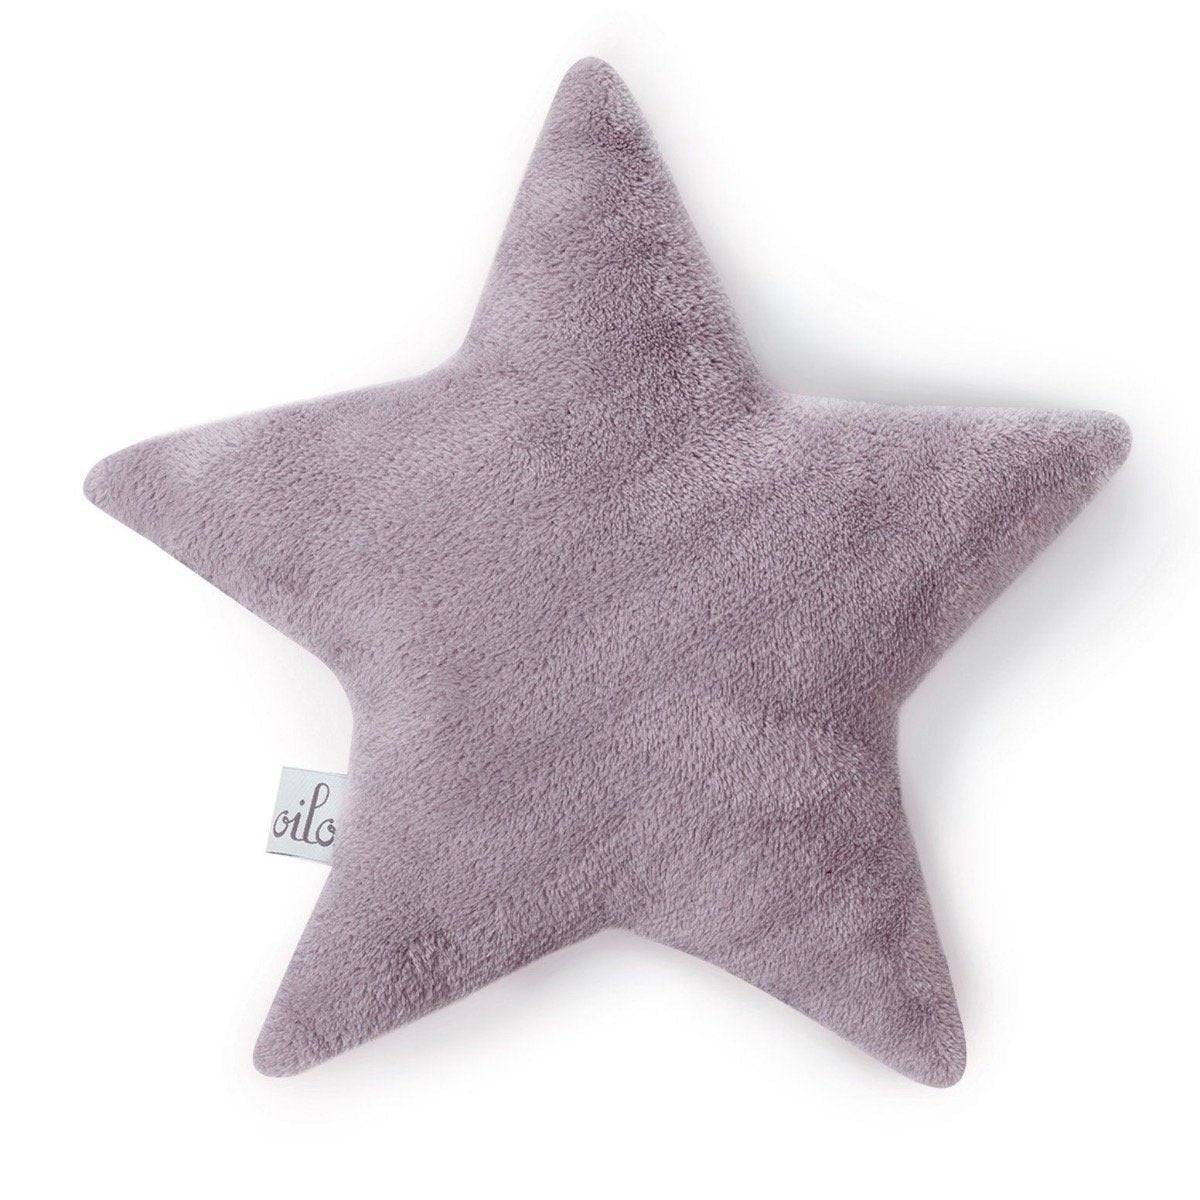 Lavender Star Pillow - Twinkle Twinkle Little One